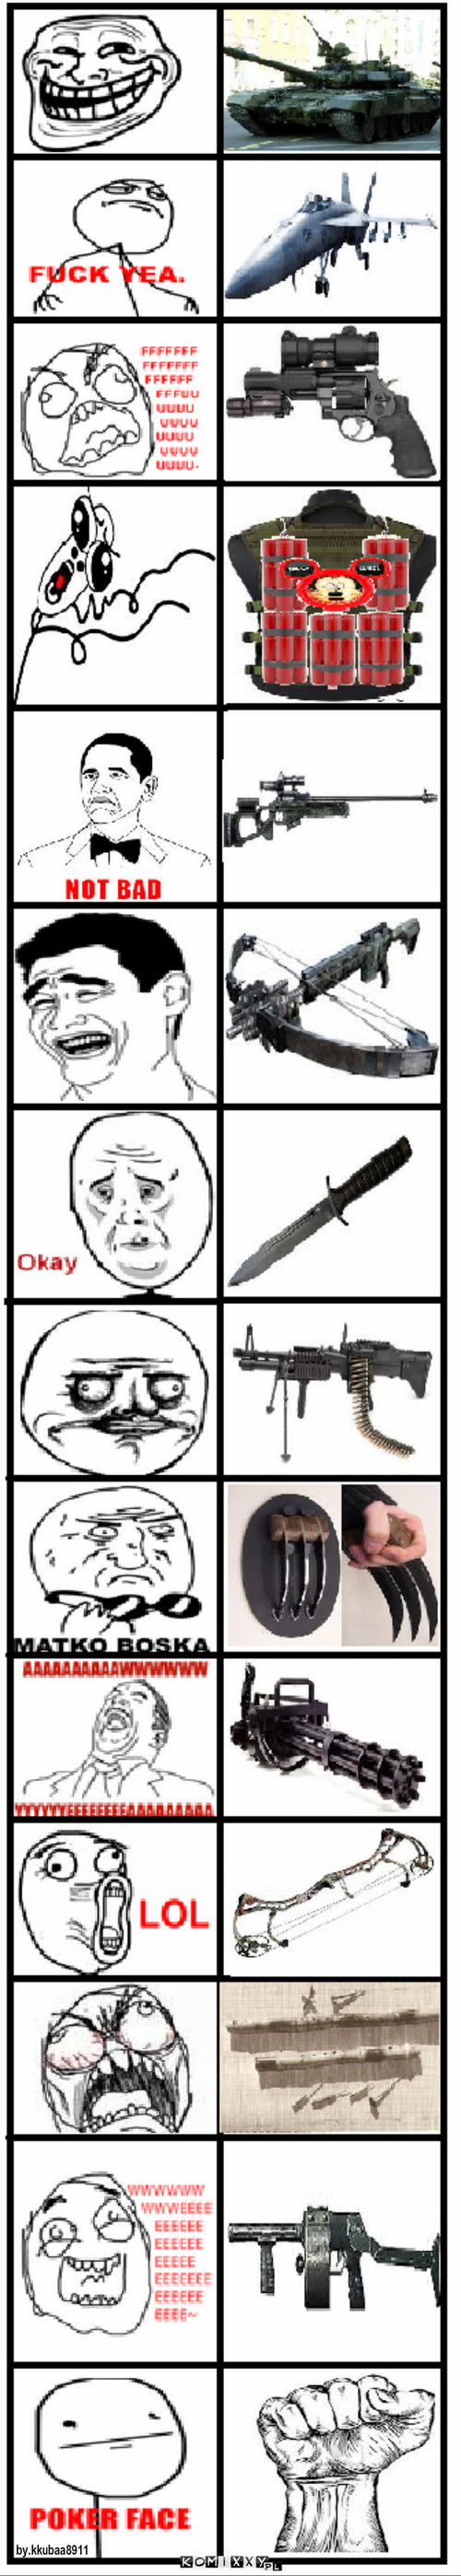 Czym memy walczyły by podczas wojny. – by.kkubaa8911 